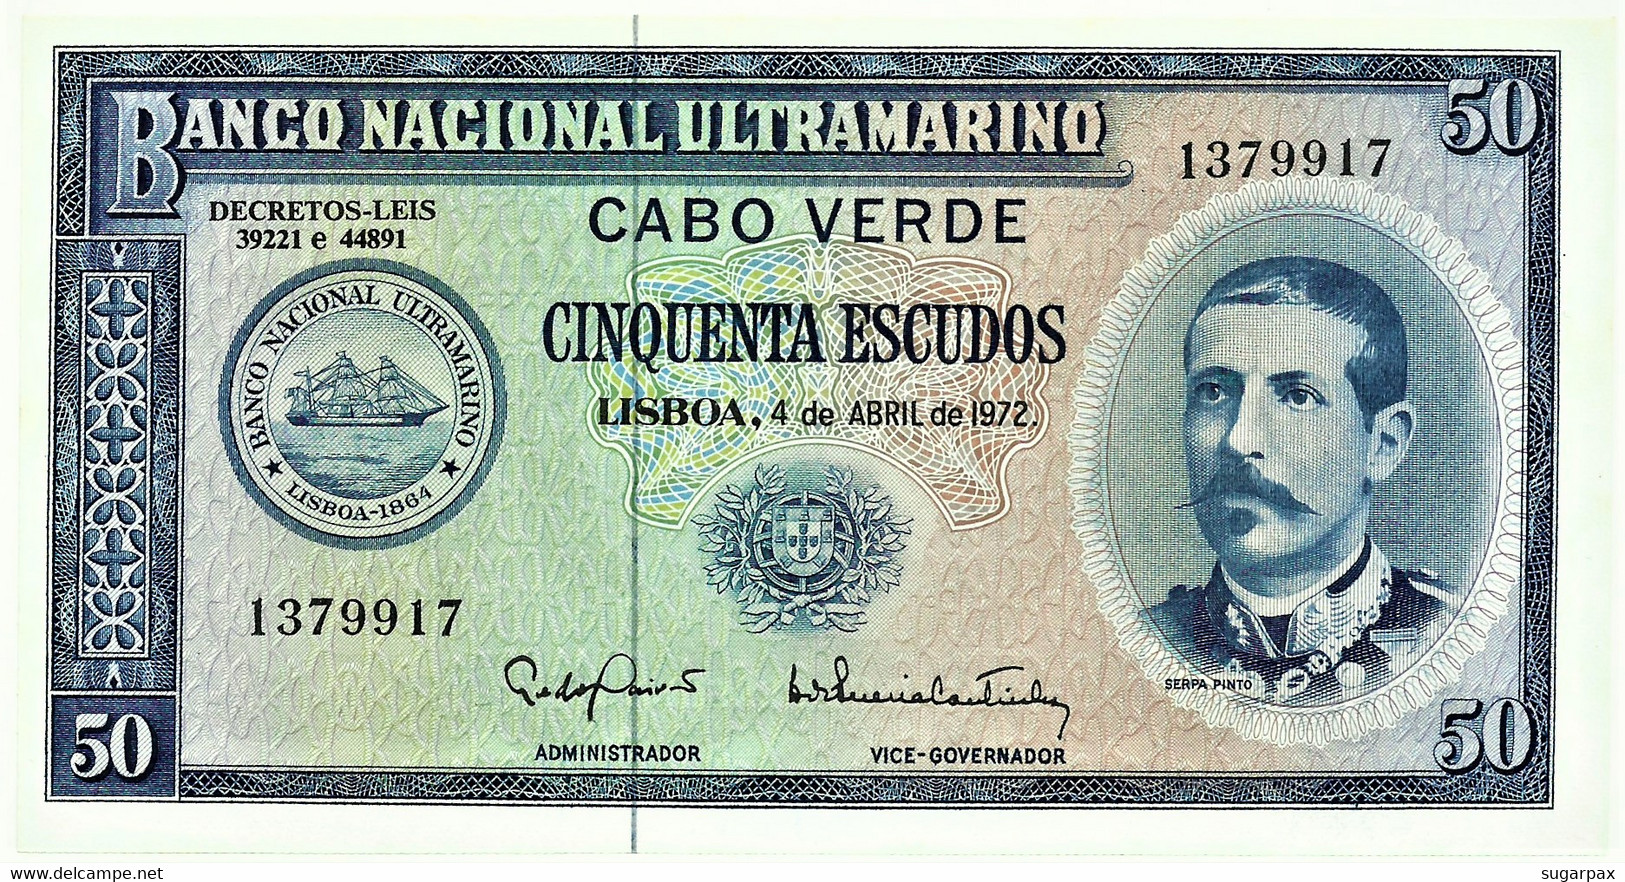 CAPE VERDE - 50 ESCUDOS - 04.04.1972 - Pick 53 - Unc. - Serpa Pinto - Portugal Cabo - Cape Verde